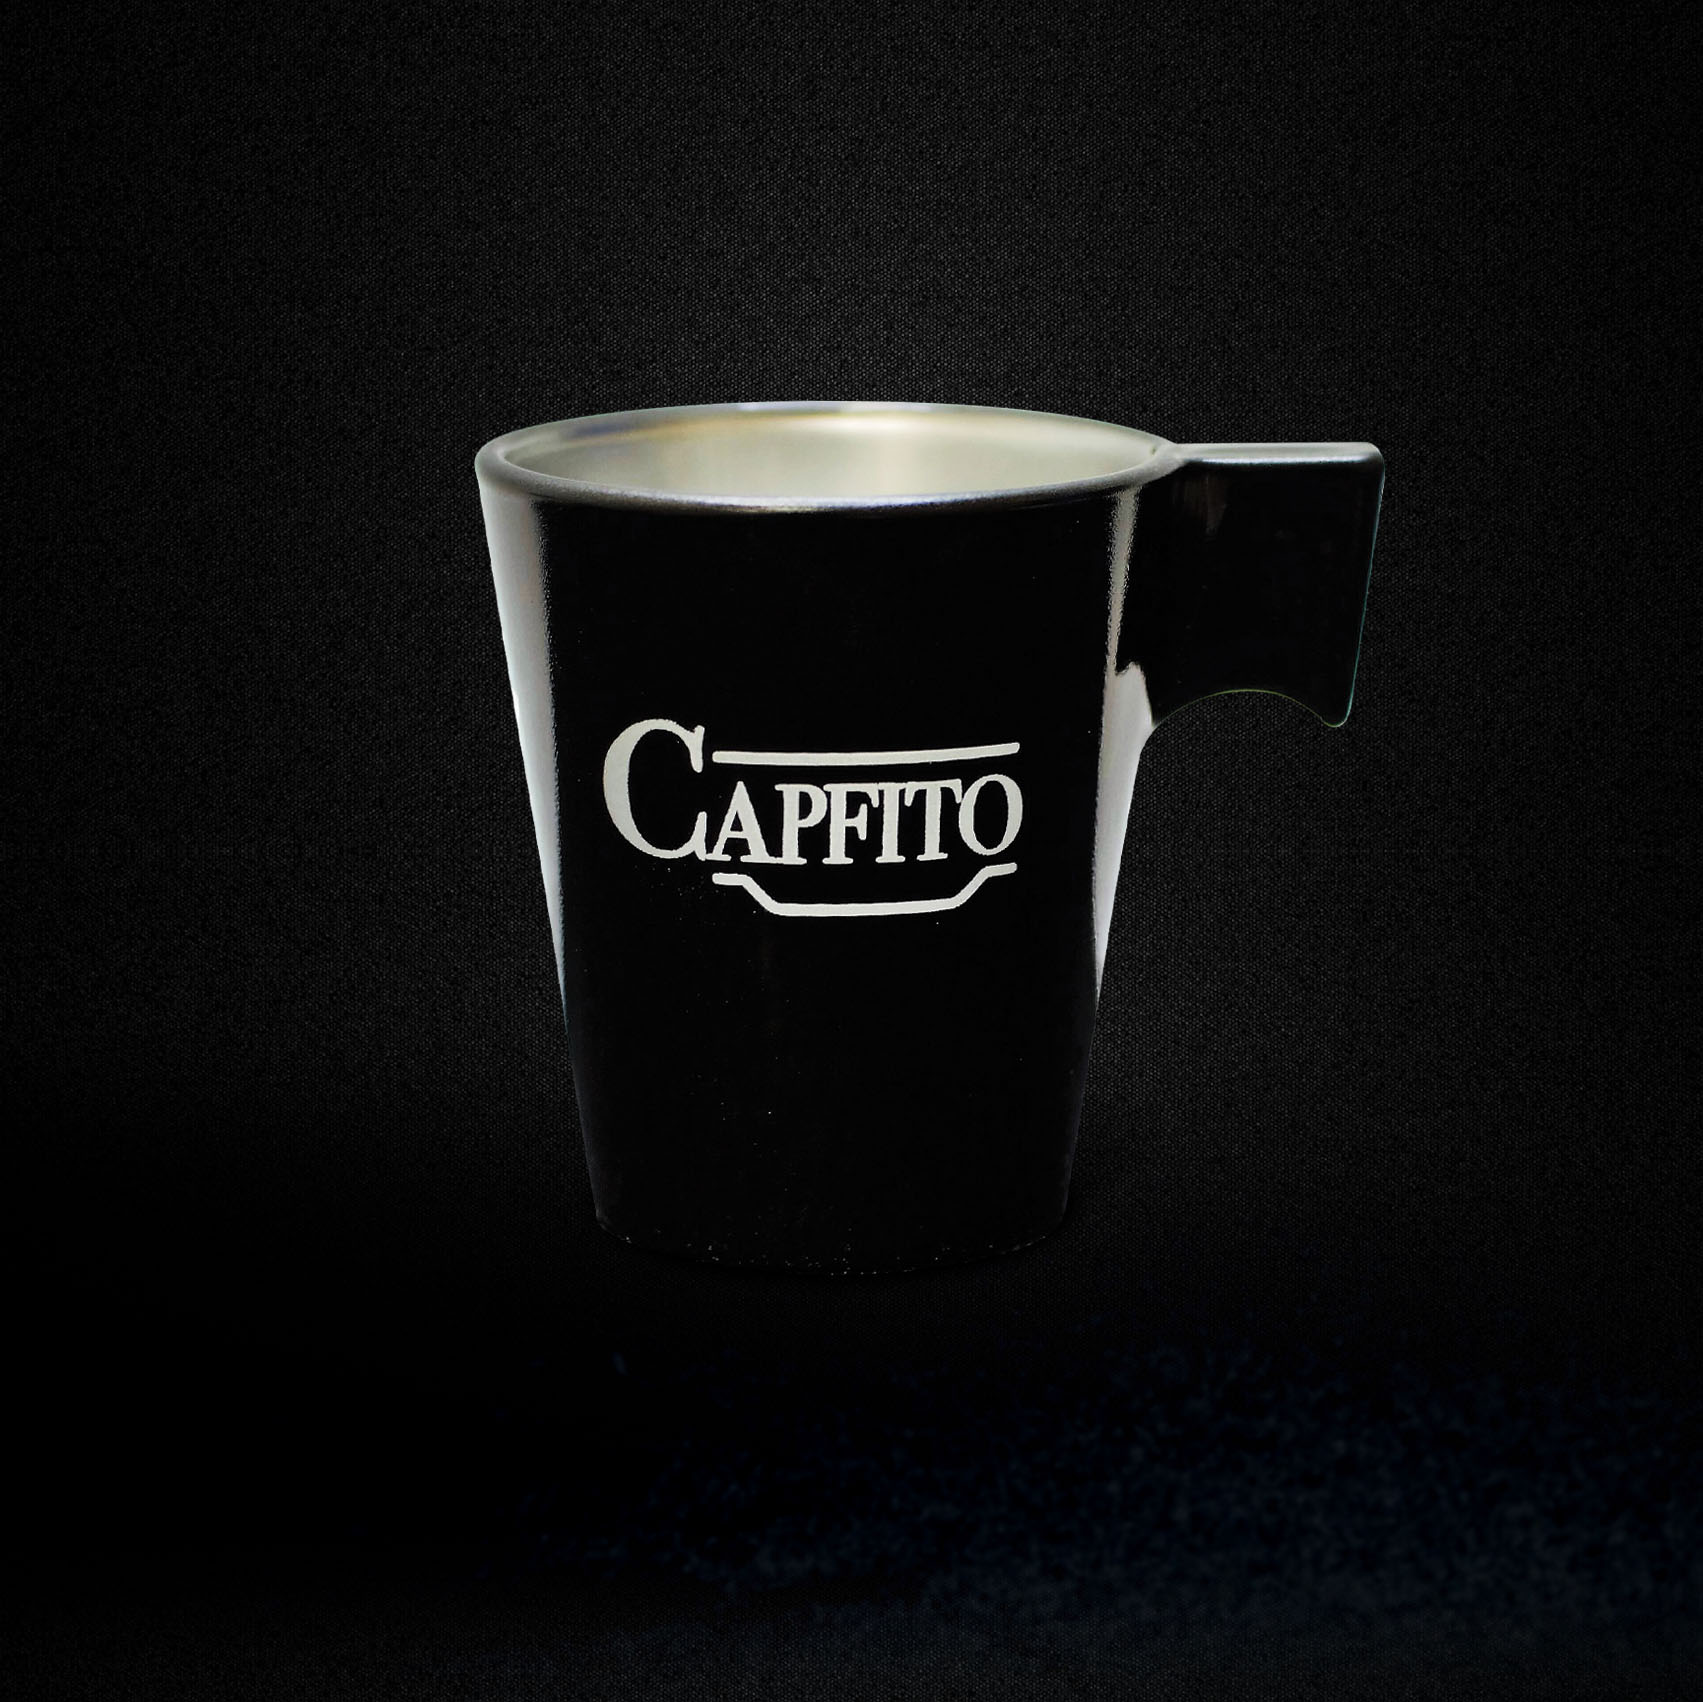 TAZZINA CAFFE NERO - Capfito - Capsule Nespresso ricaricabili